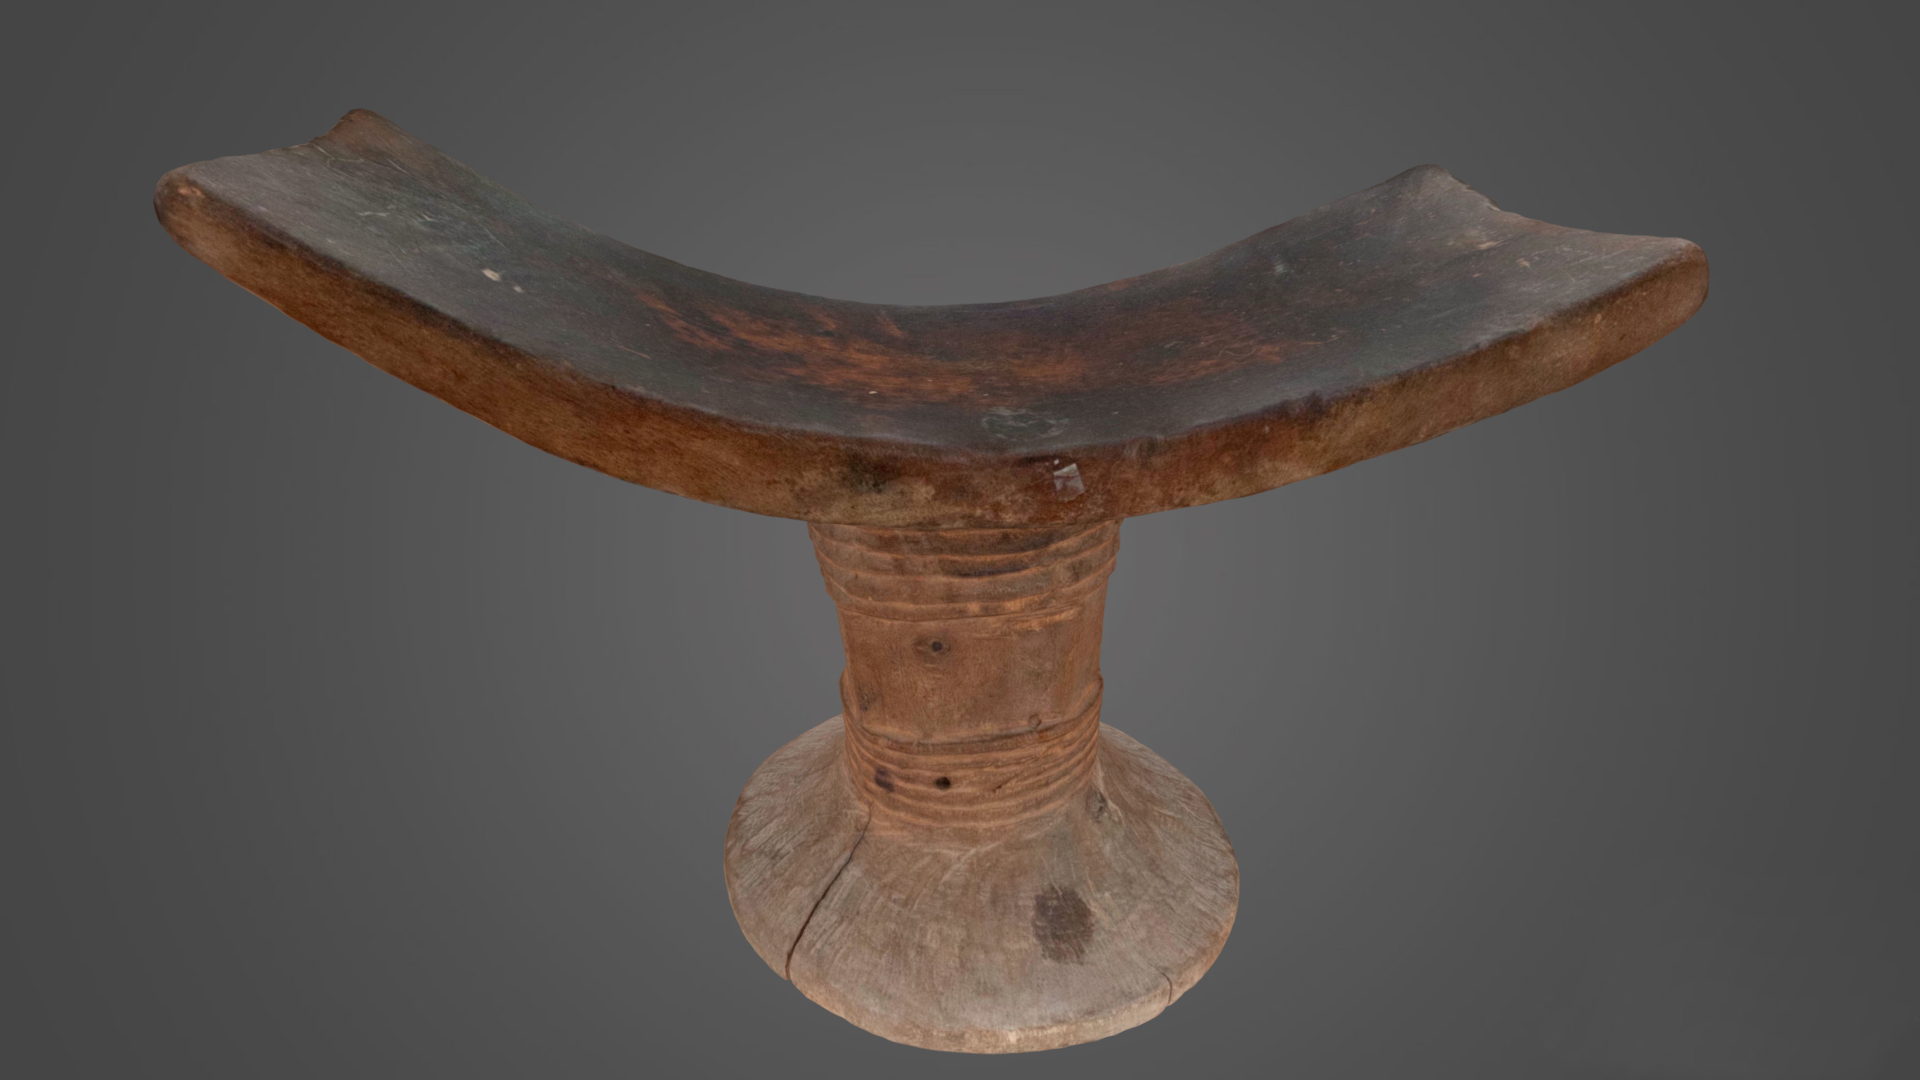 3D Scan of an Aweer Wooden Headrest